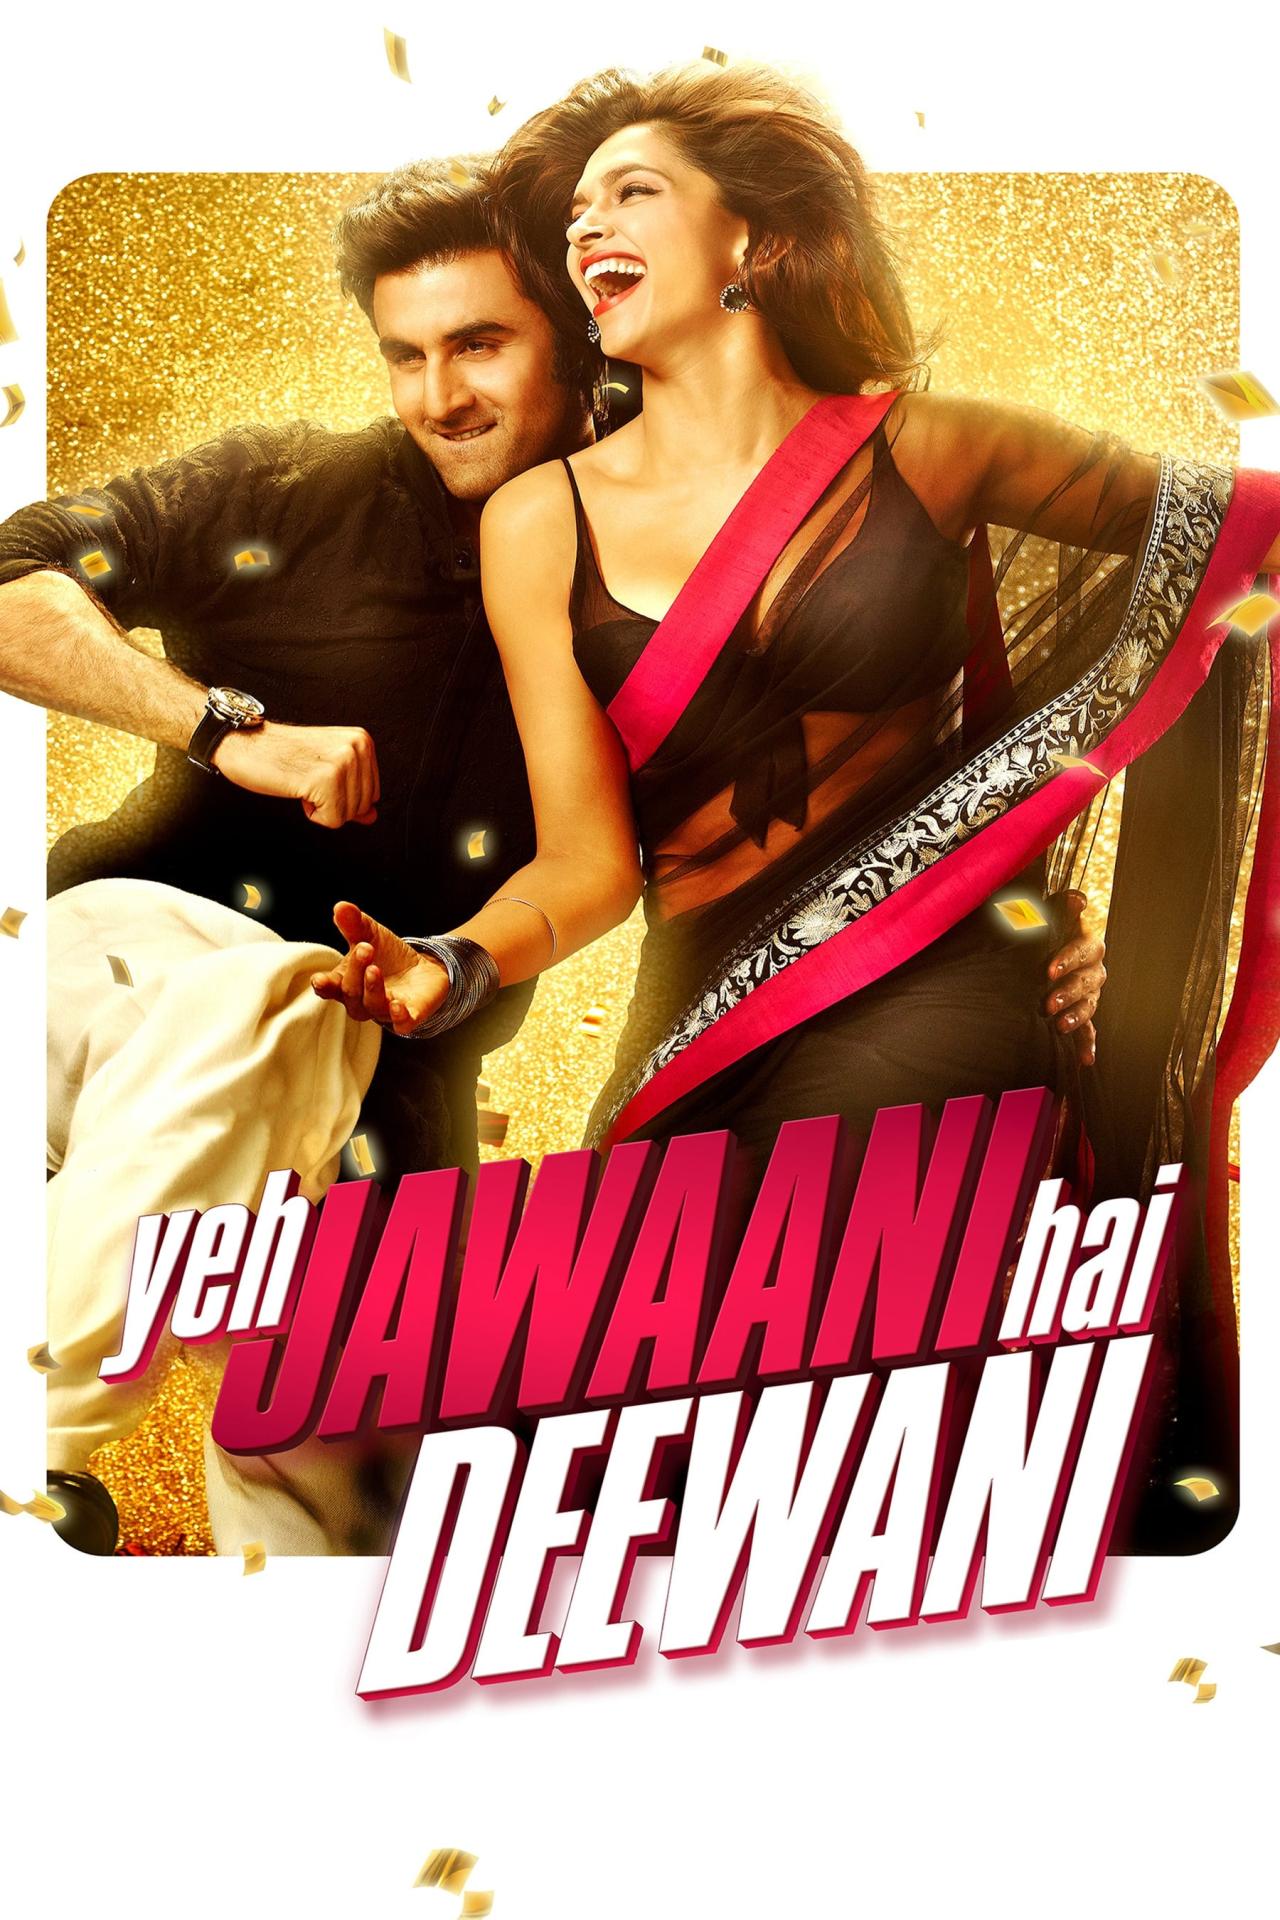 Affiche du film Yeh Jawaani Hai Deewani poster